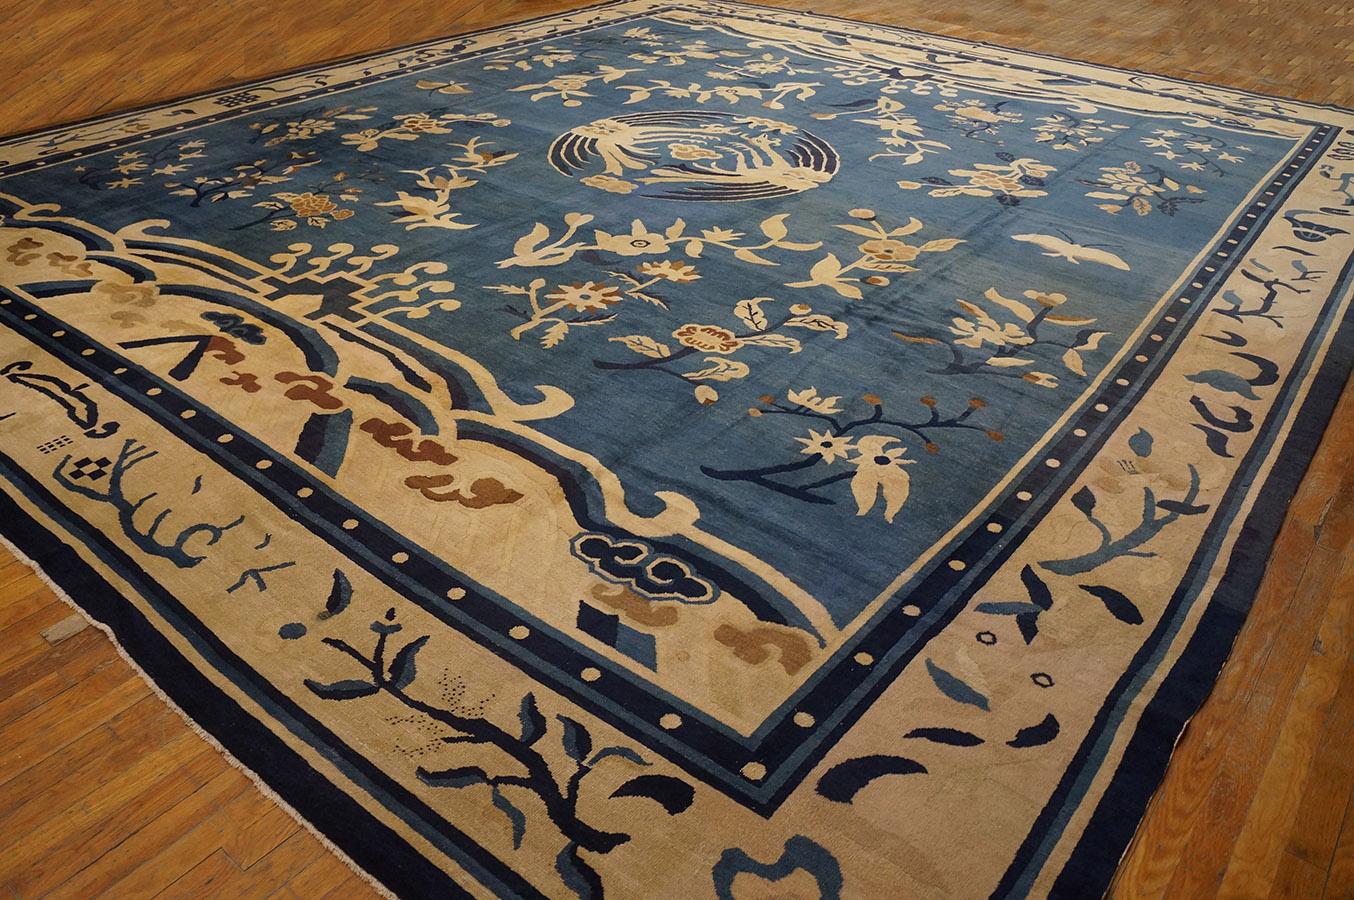 Antique Chinese Peking rug, size: 15'6